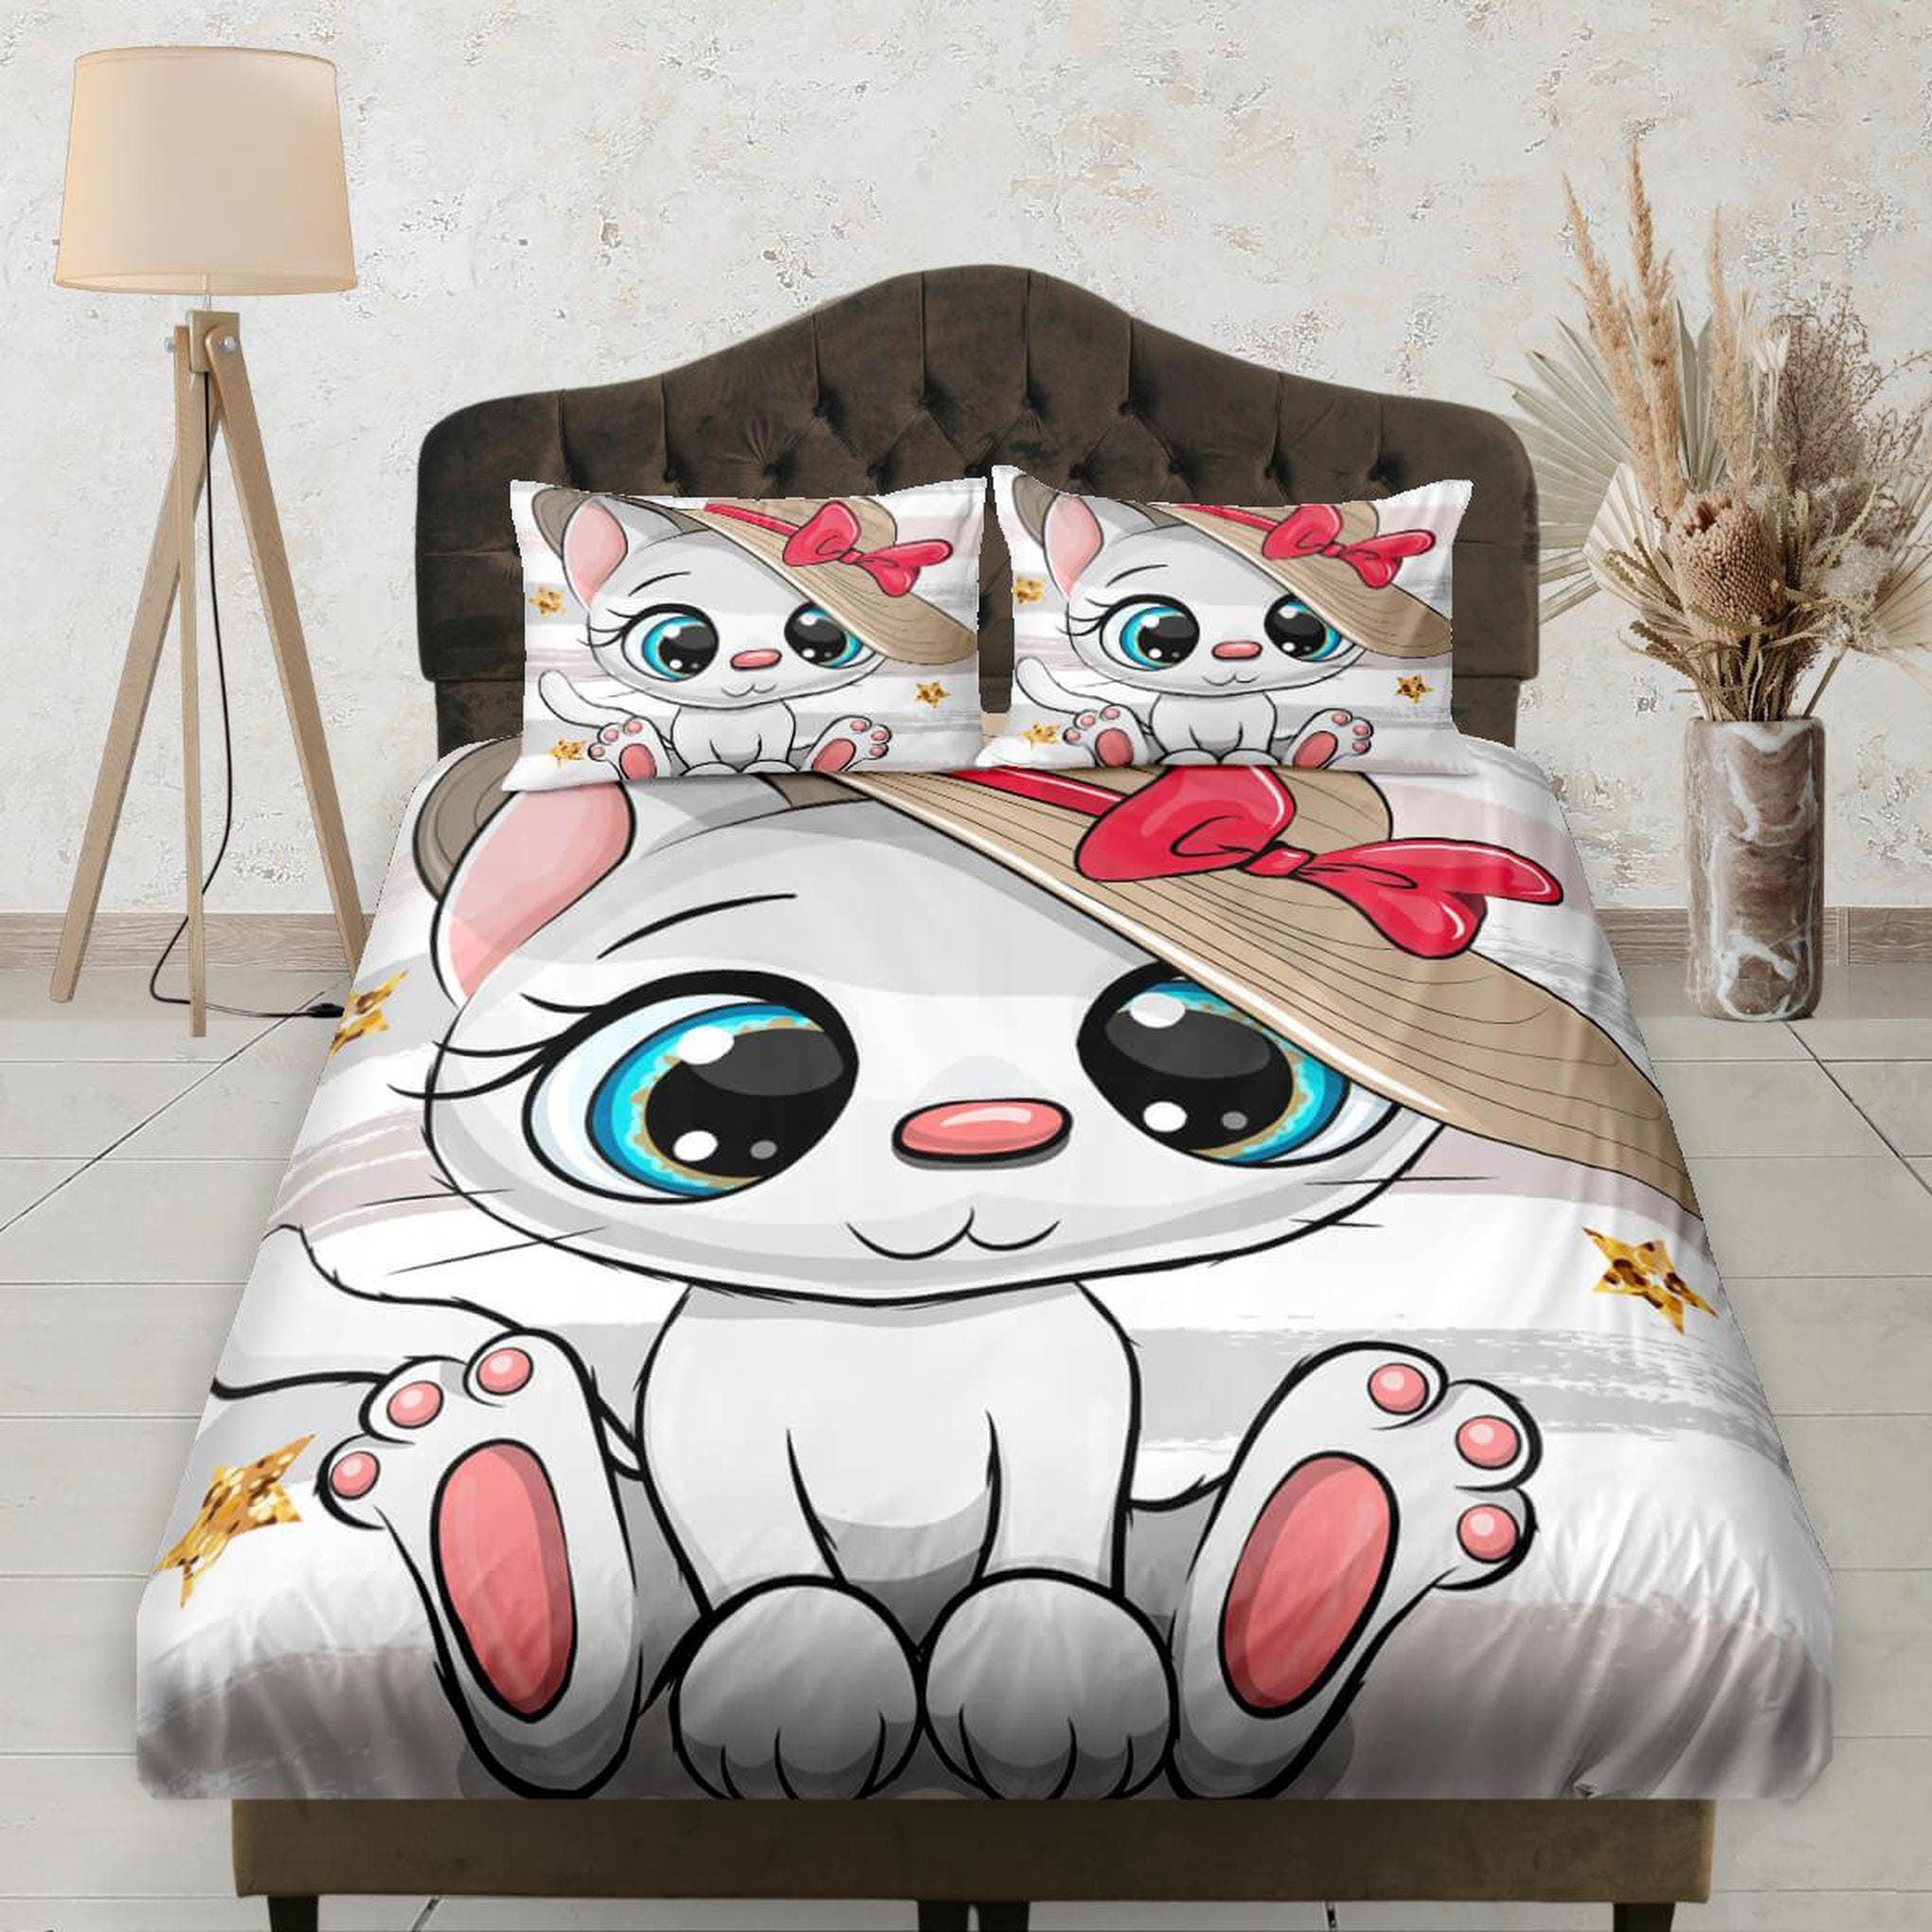 daintyduvet Cute White Cat Girly Fitted Sheet Deep Pocket, Aesthetic Dorm Bedding Set Full, Elastic Bedsheet, Crib Sheet, Baby Bedding, Cat Lover Gift